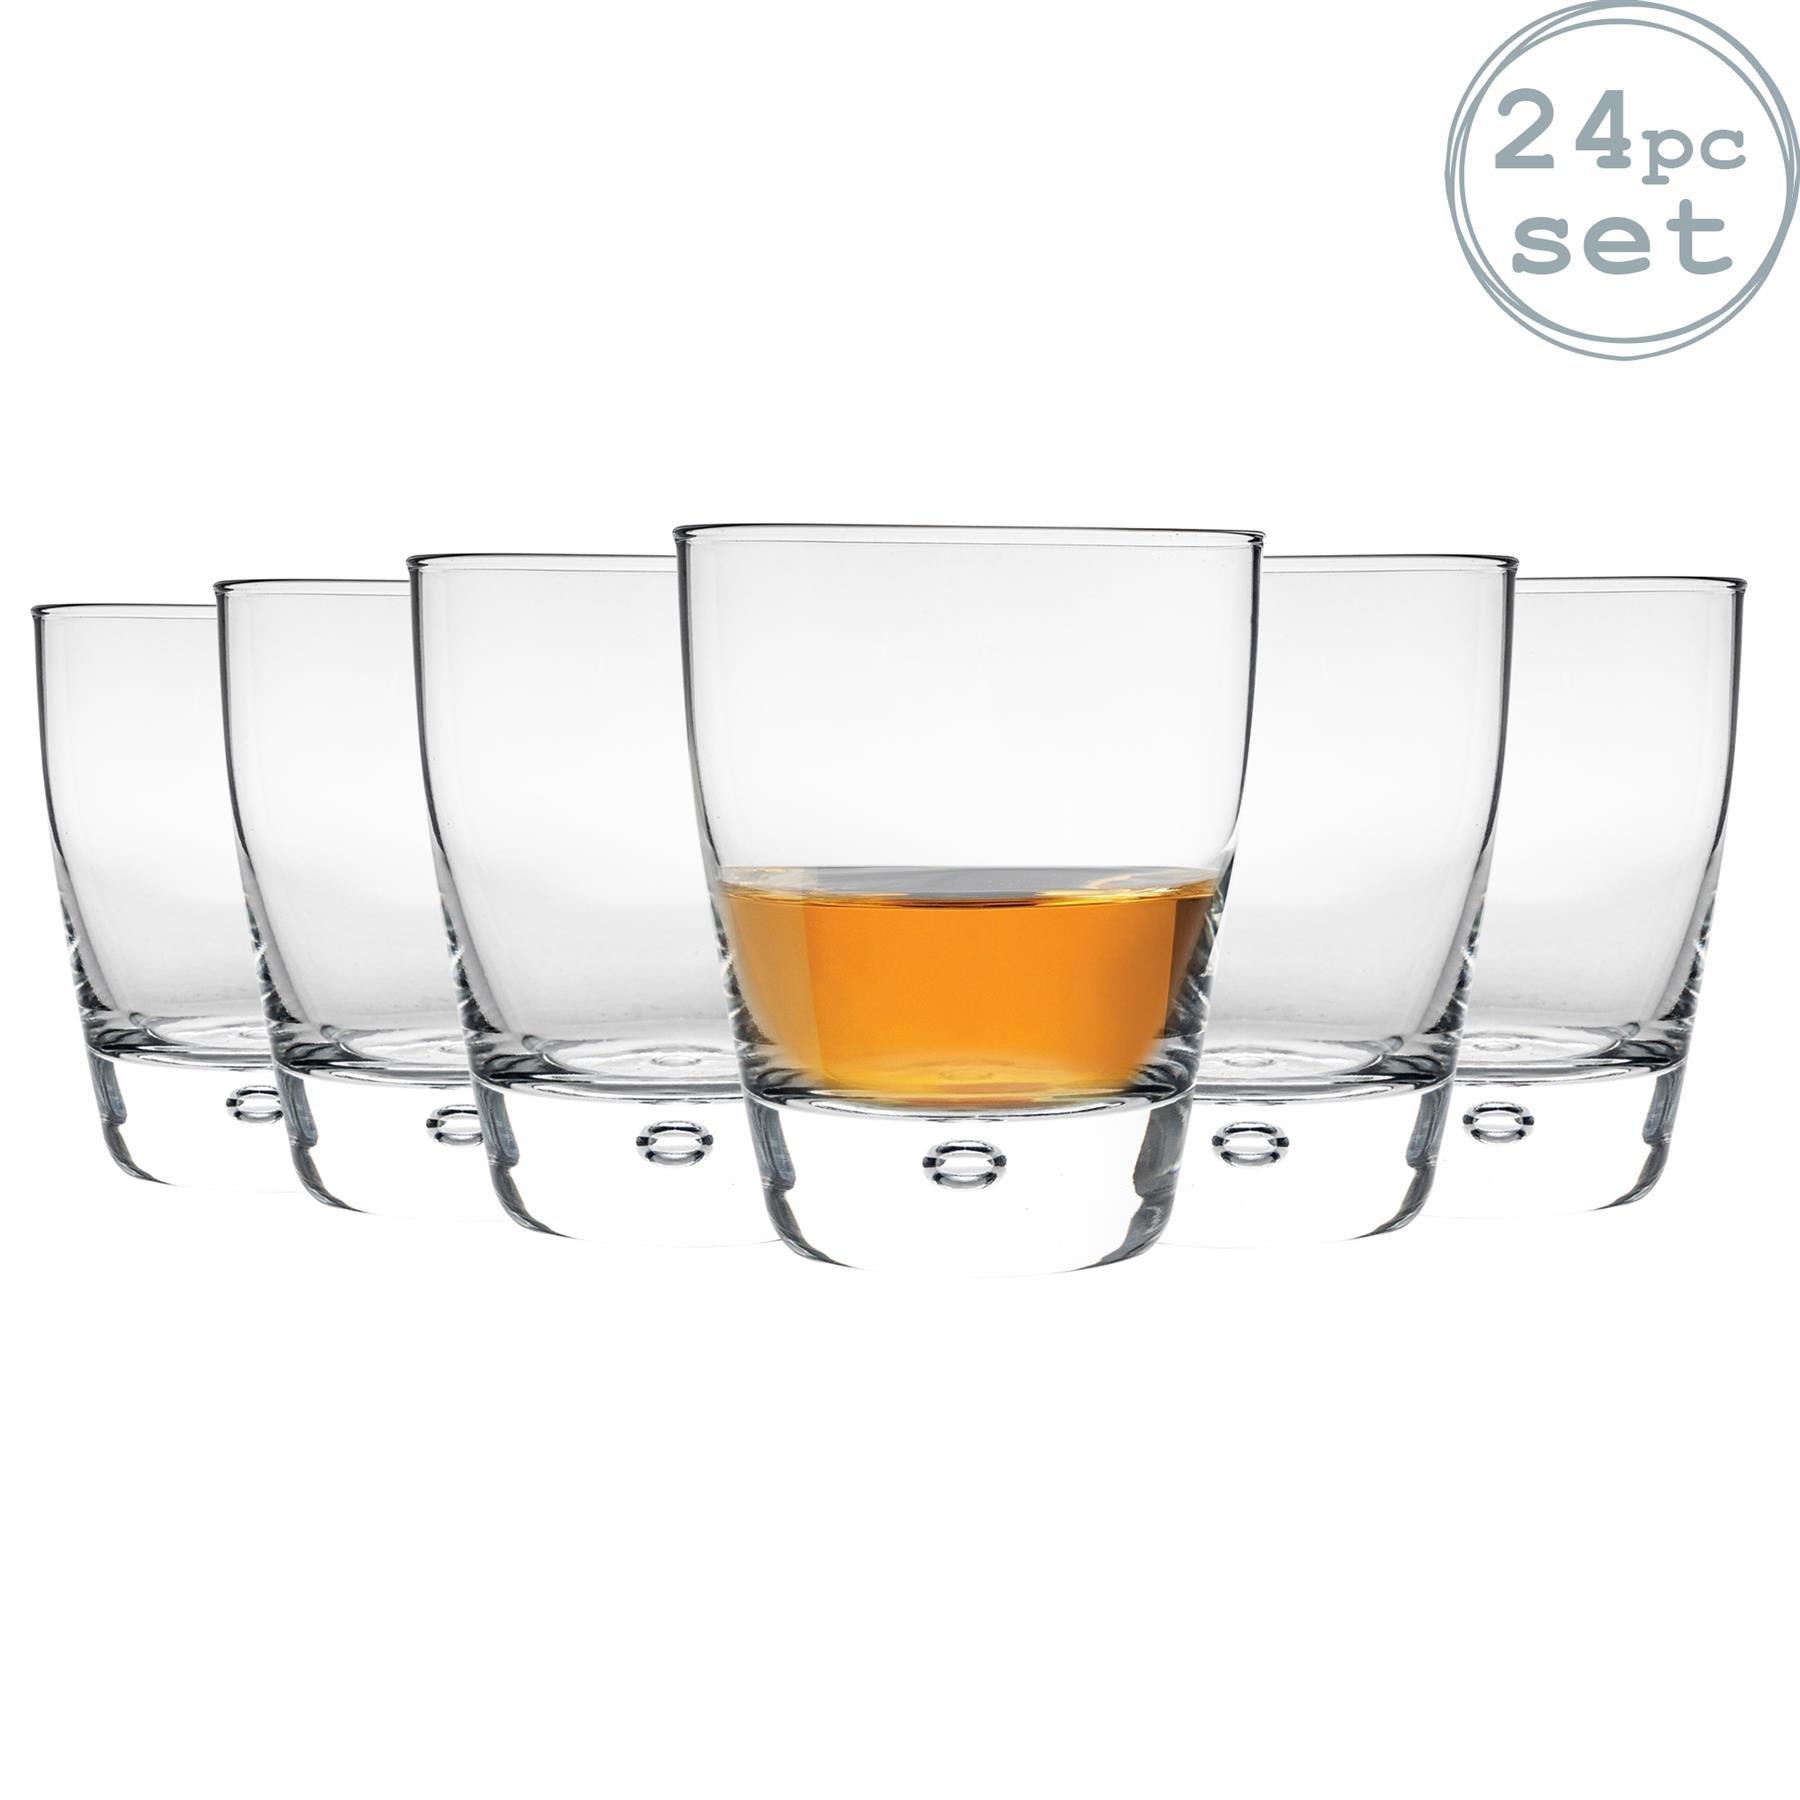 Luna Whisky Glasses - 260ml - Pack of 24